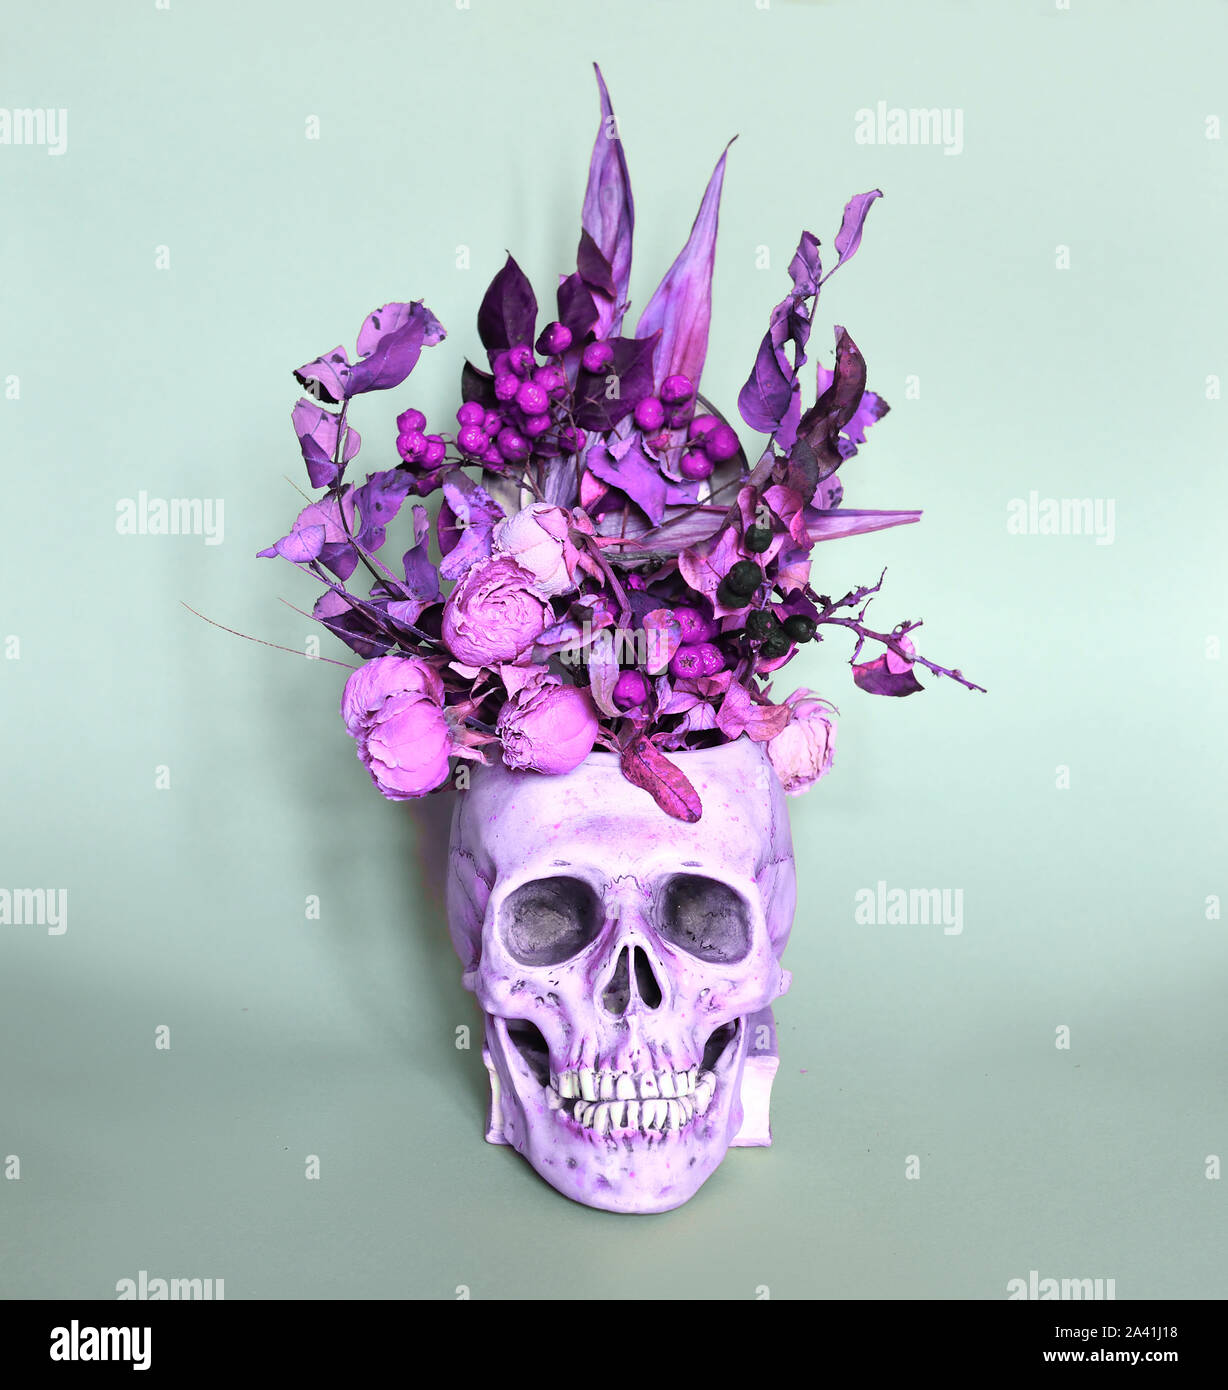 Kreative florale Layout mit Totenkopf und Rosen für den Hintergrund. Spooky  flach. Hellowen Hintergrund Stockfotografie - Alamy